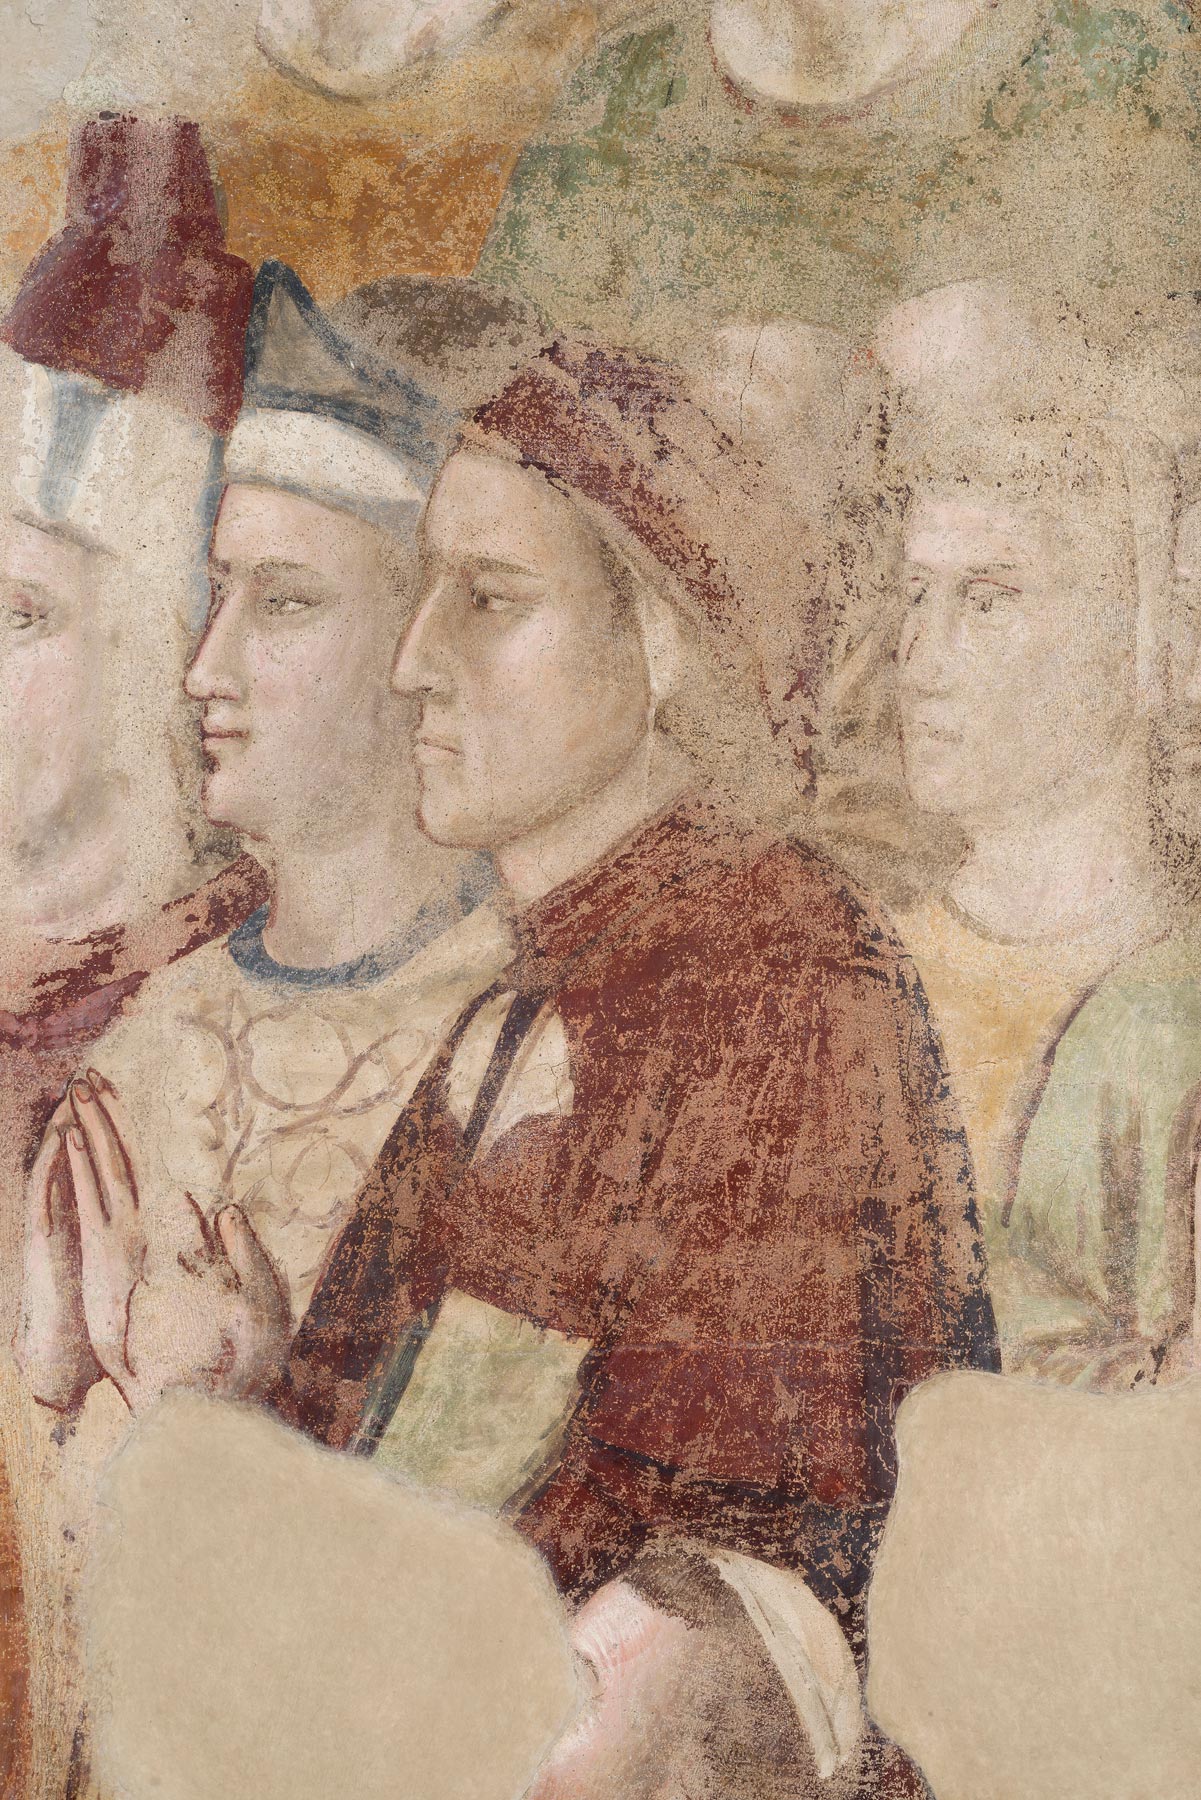 Giotto e scuola giottesca, Ritratto di Dante (1334-1337; affresco; Firenze, Museo del Bargello, Cappella del Podestà)
